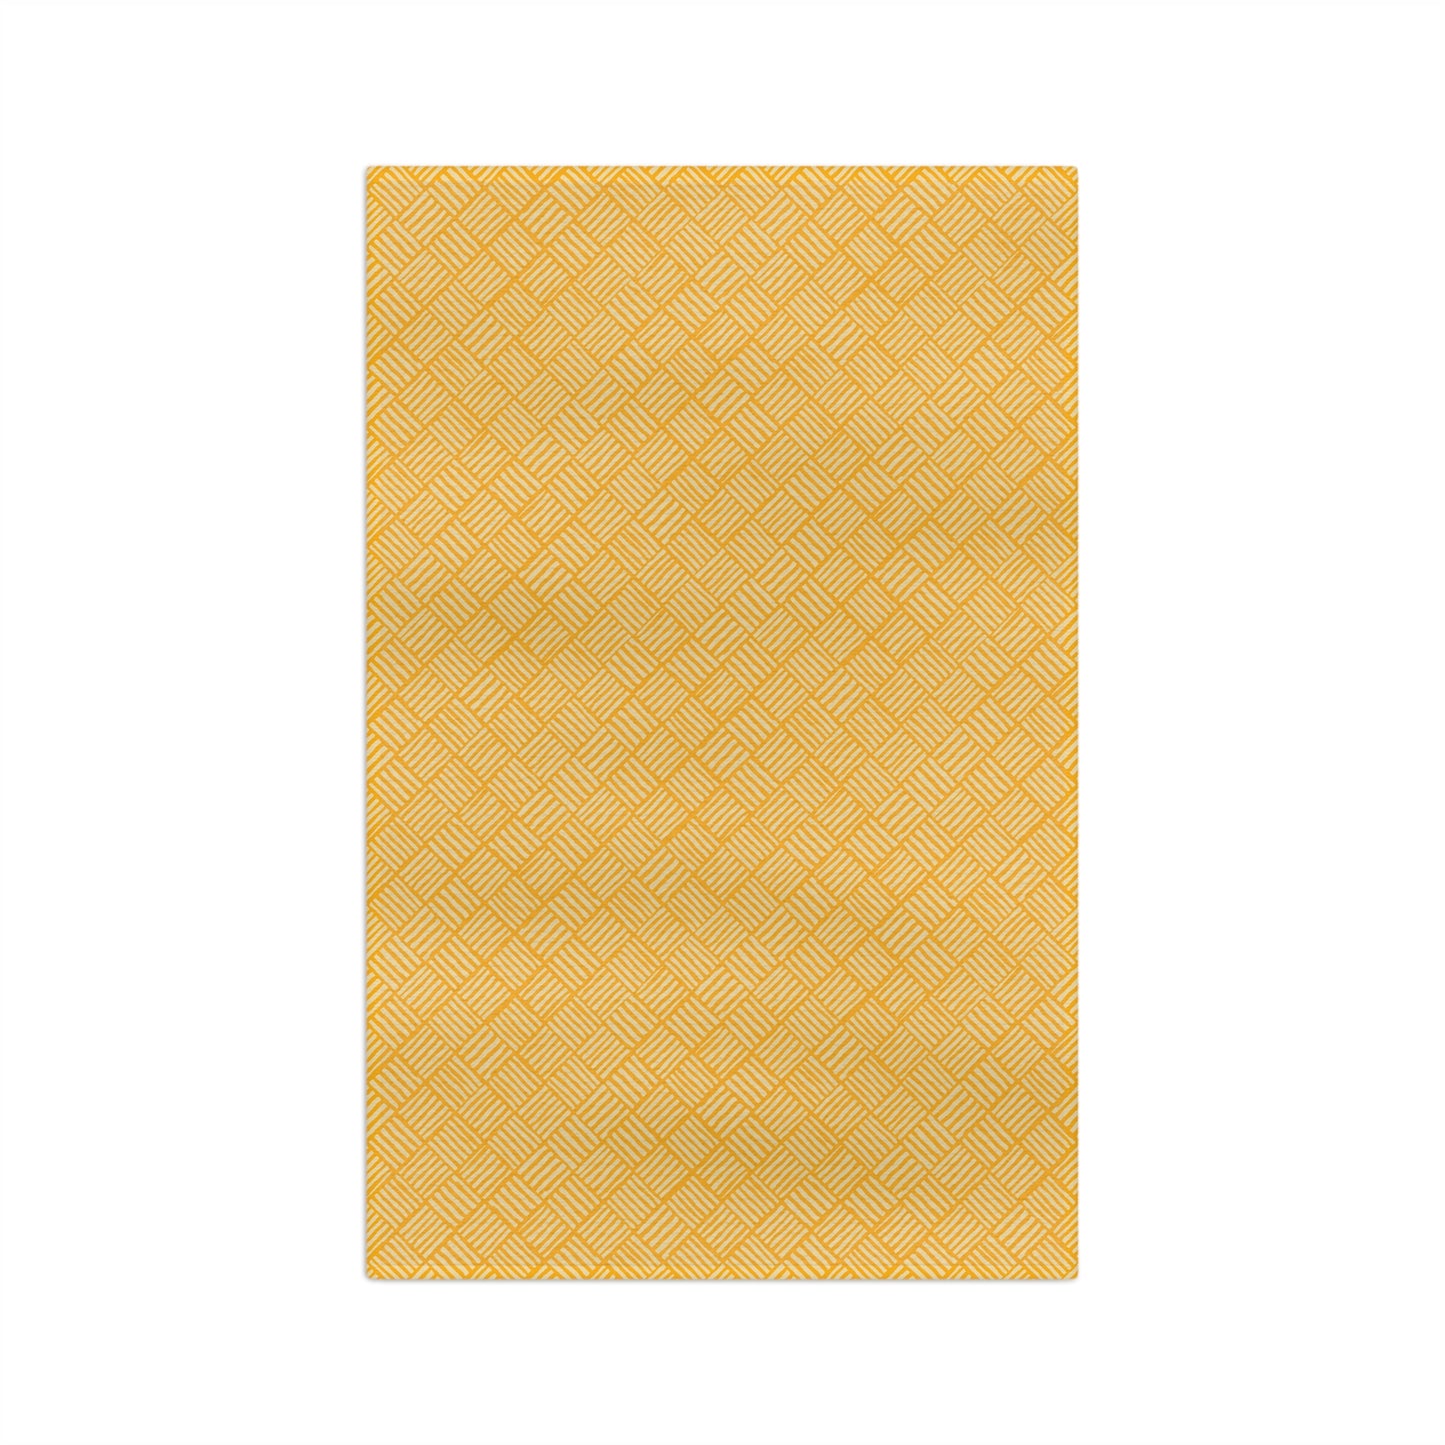 Tropic Sun Weave - Soft Tea Towel